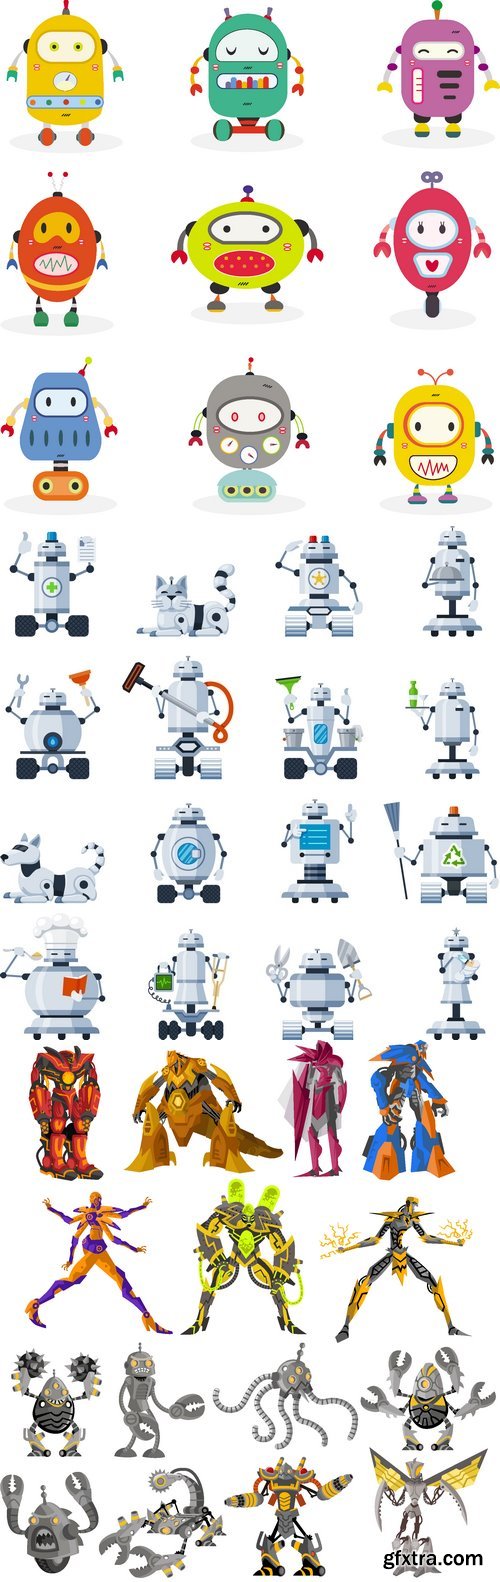 Vectors - Cartoon Funny Robots 11